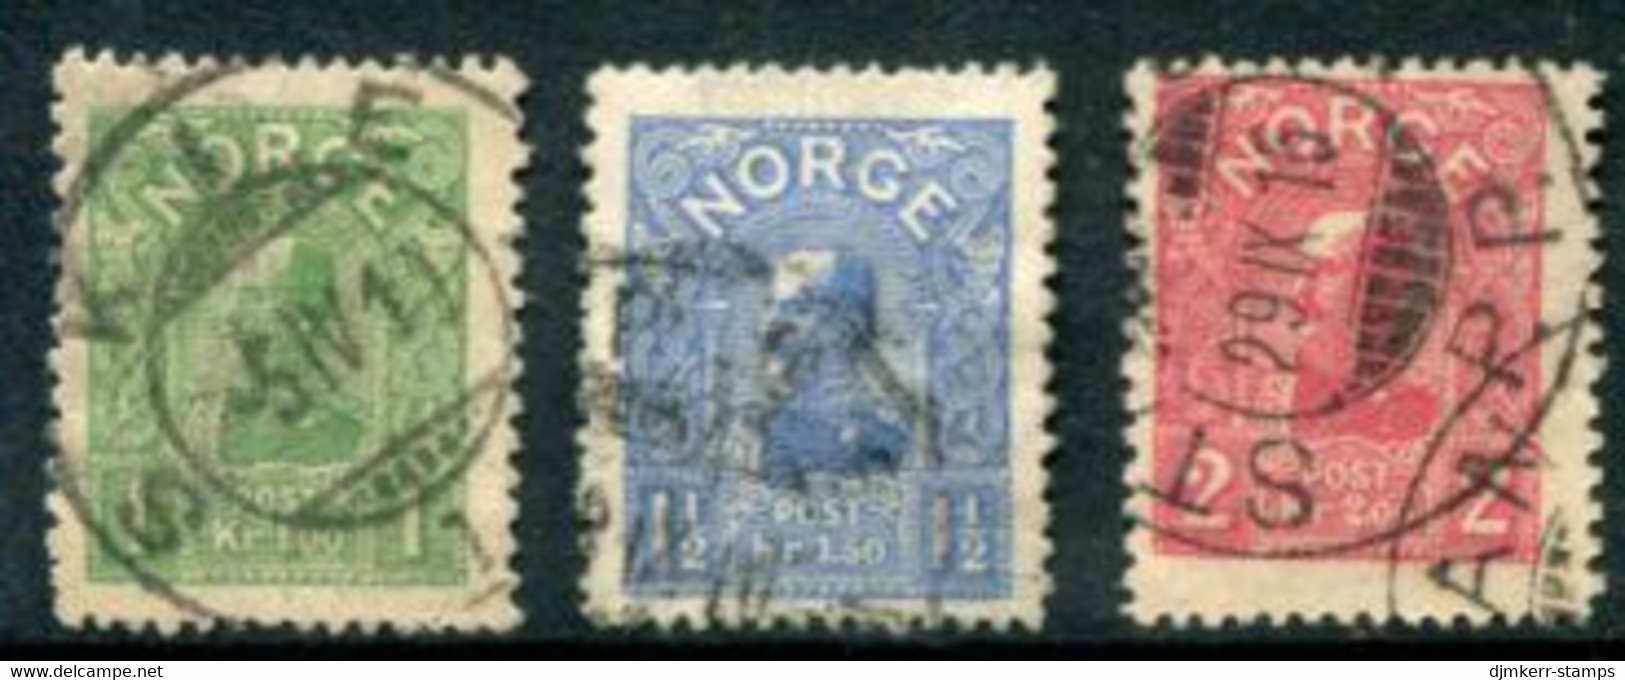 NORWAY 1907 King Haakon VII High Values Used.  Michel 67-69. - Gebruikt